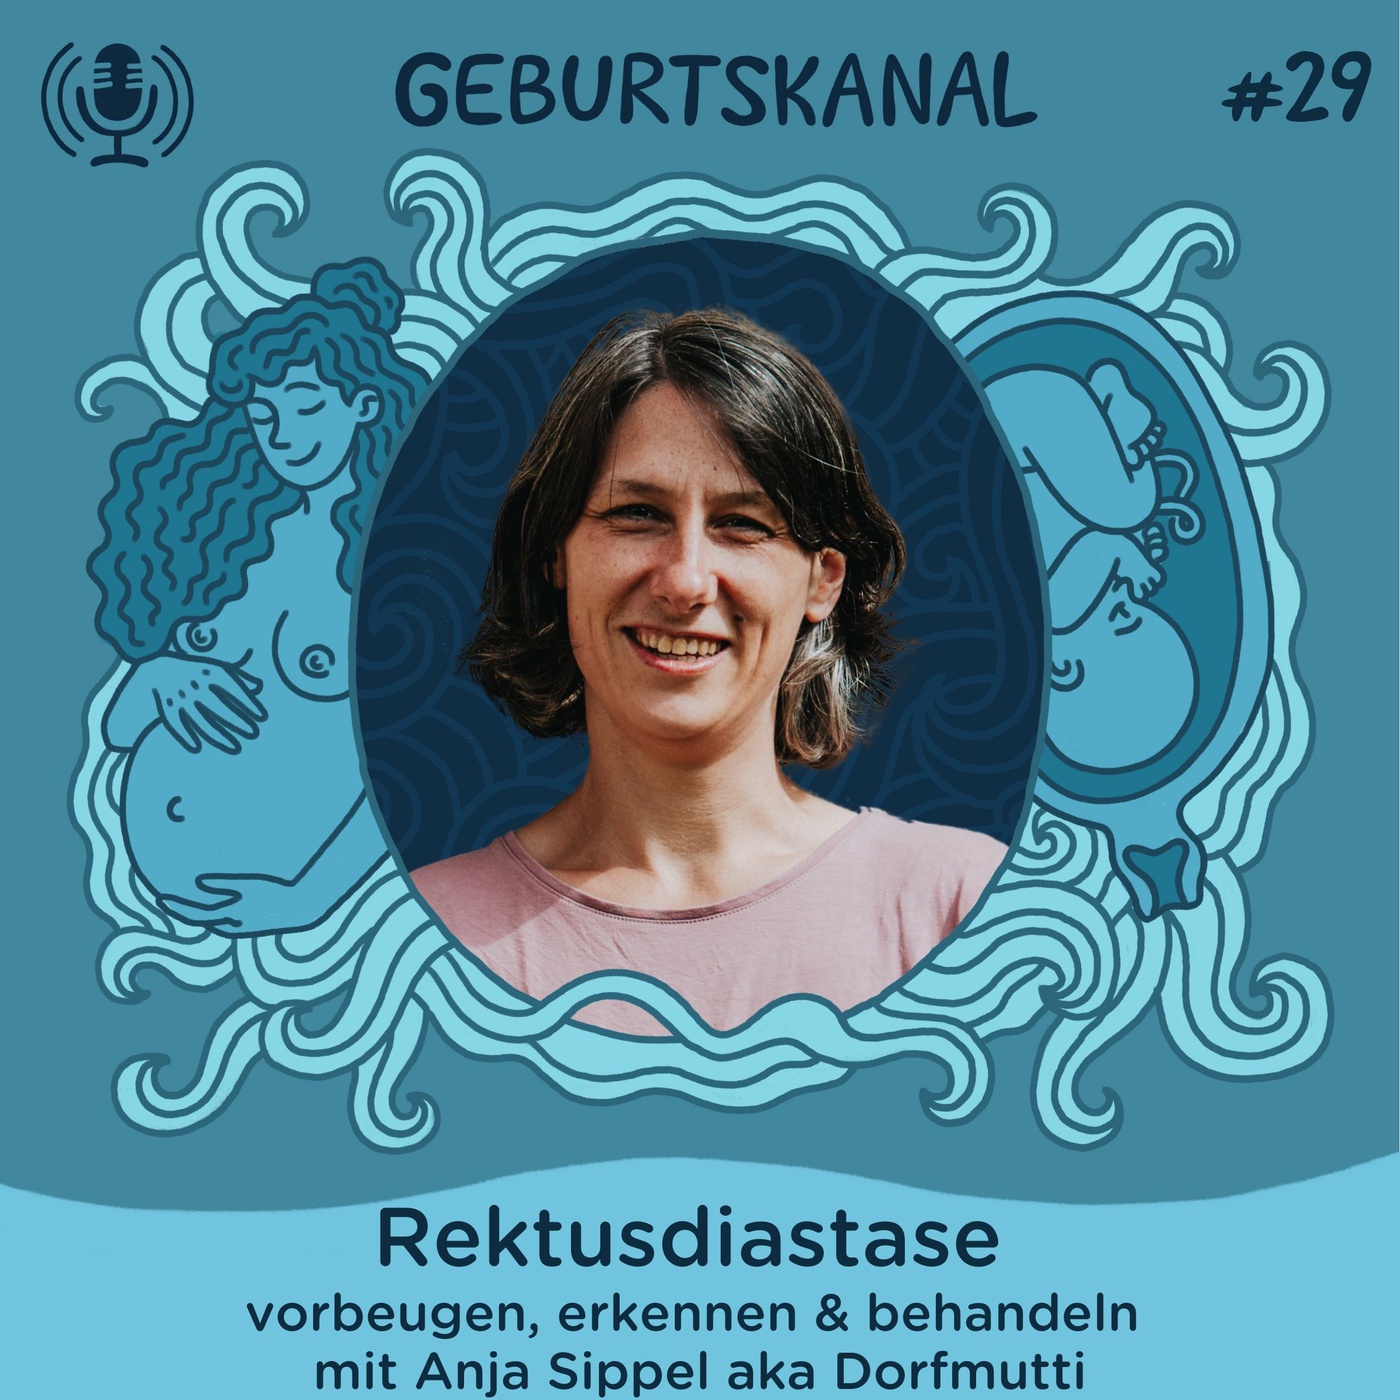 #29 Rektusdiastase: vorbeugen, erkennen & behandeln - mit Anja Sippel aka Dorfmutti